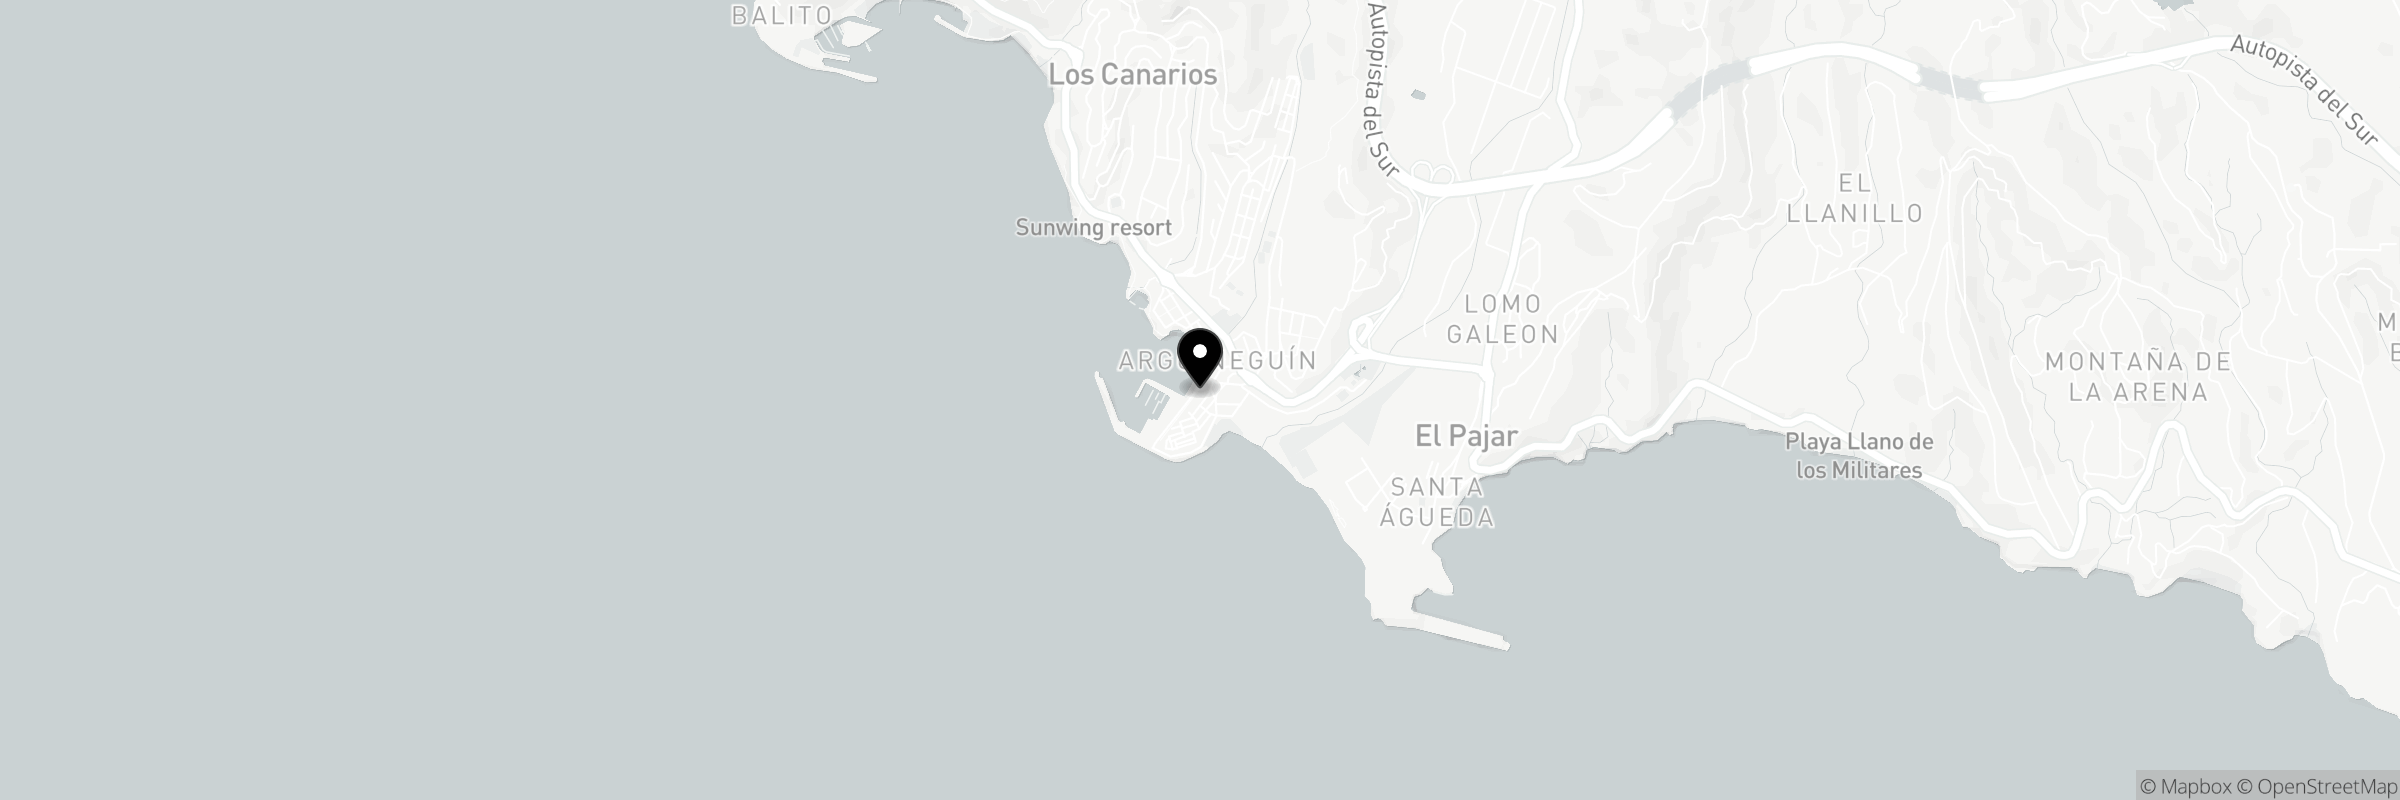 Mapa con la dirección de Taste Mesón Restaurant Gran Canaria